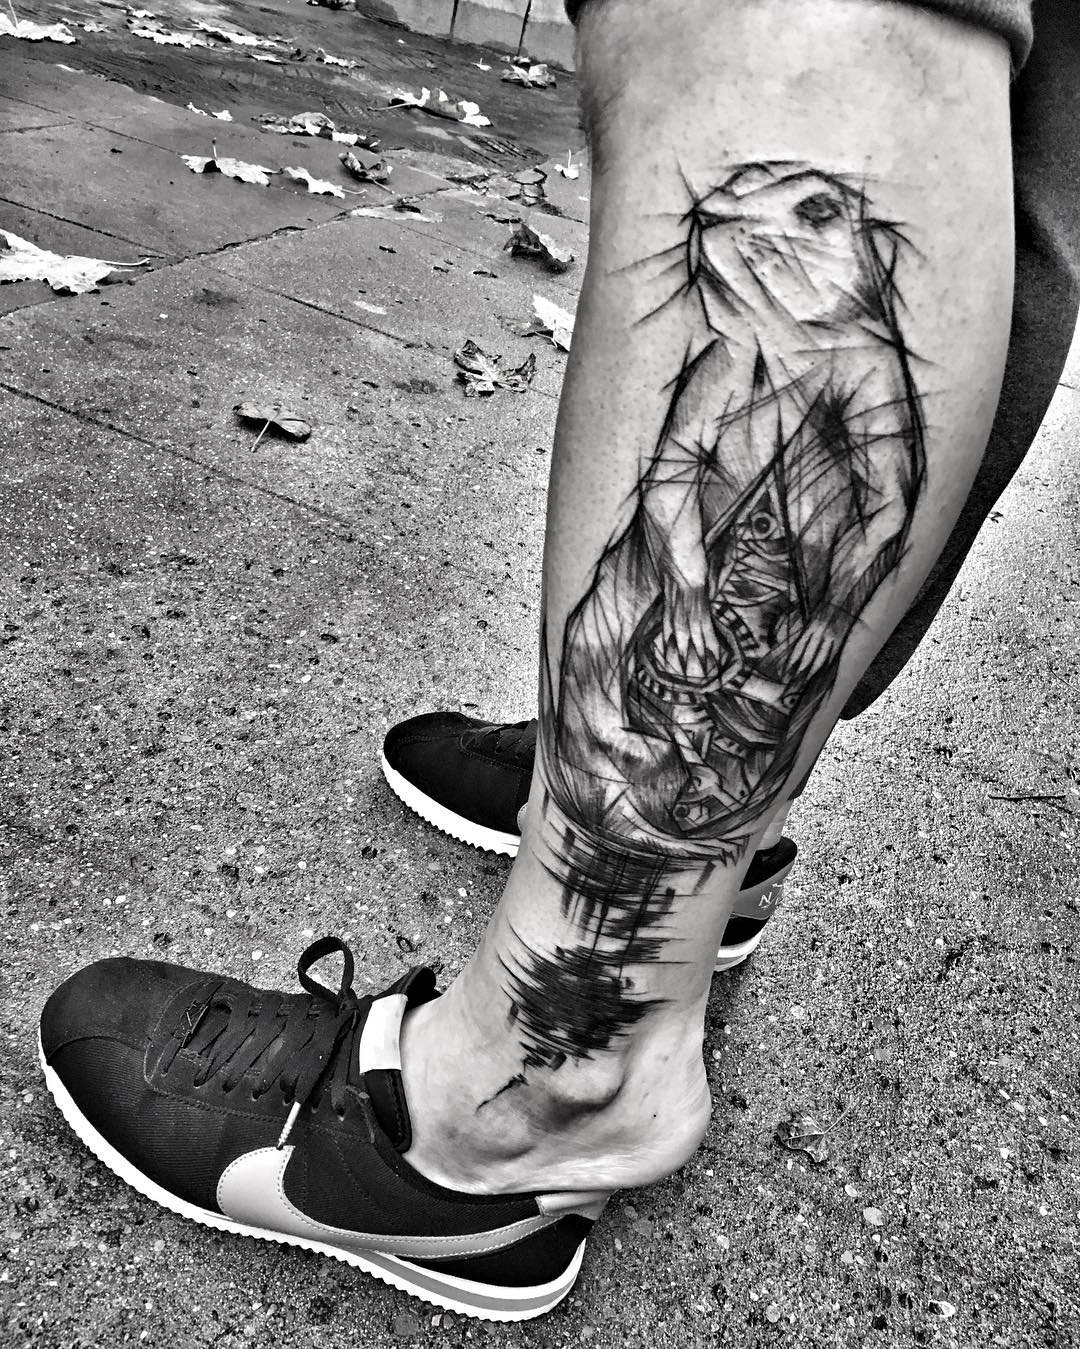 Amazing Blackwork Sketch Tattoos by Inez Janiak